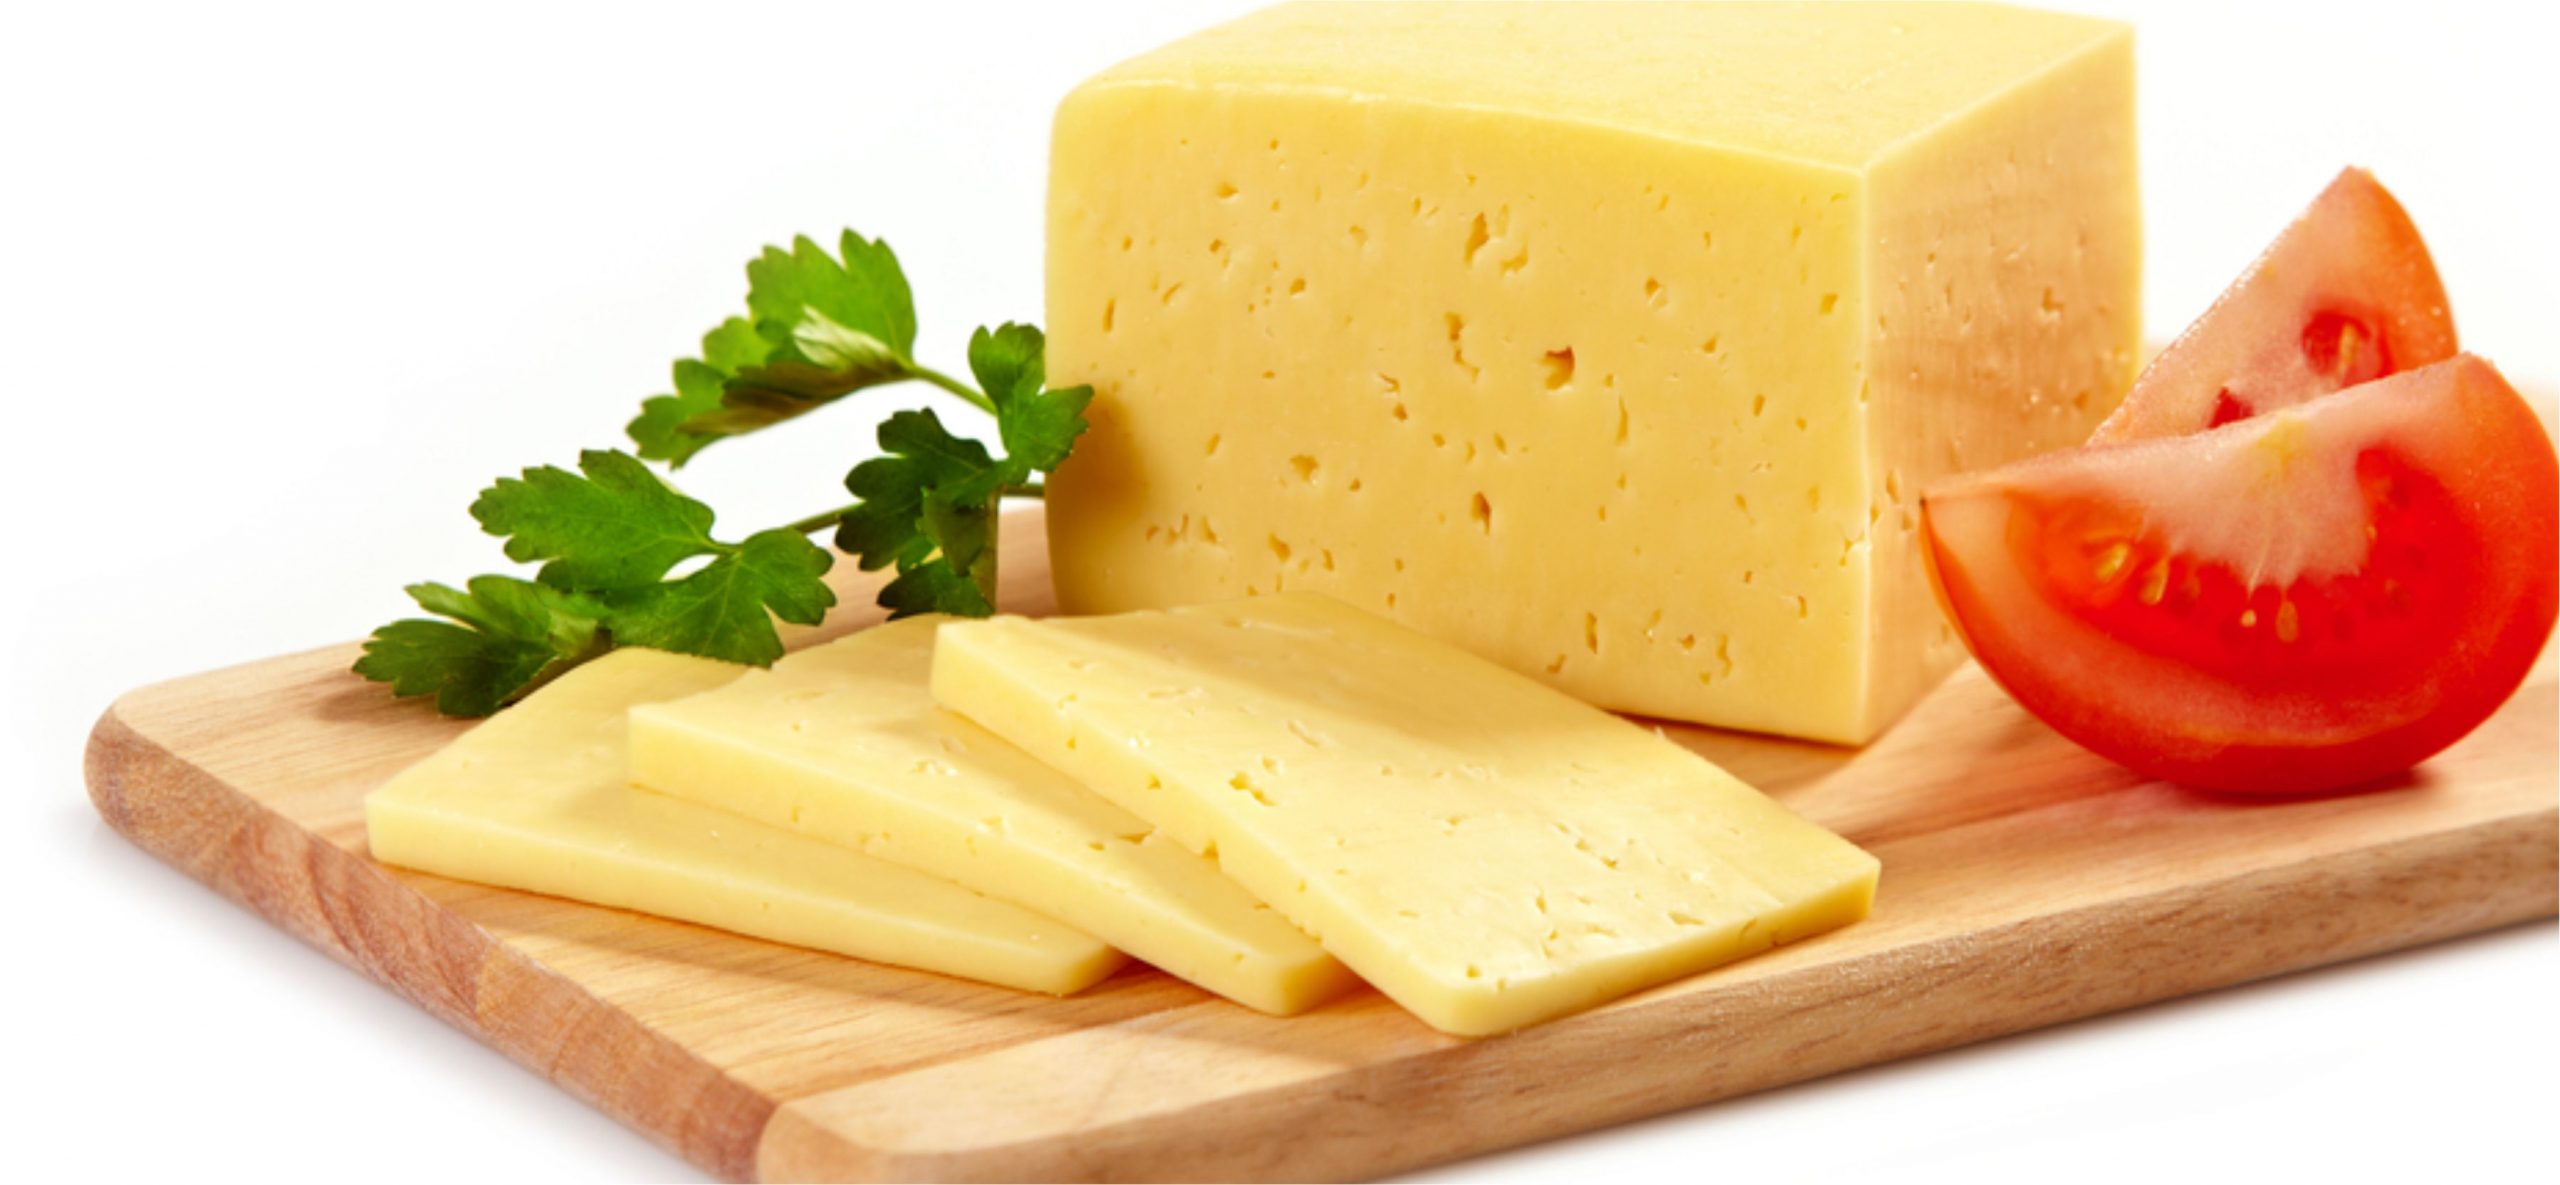 طريقة عمل الجبن الرومي البيتي